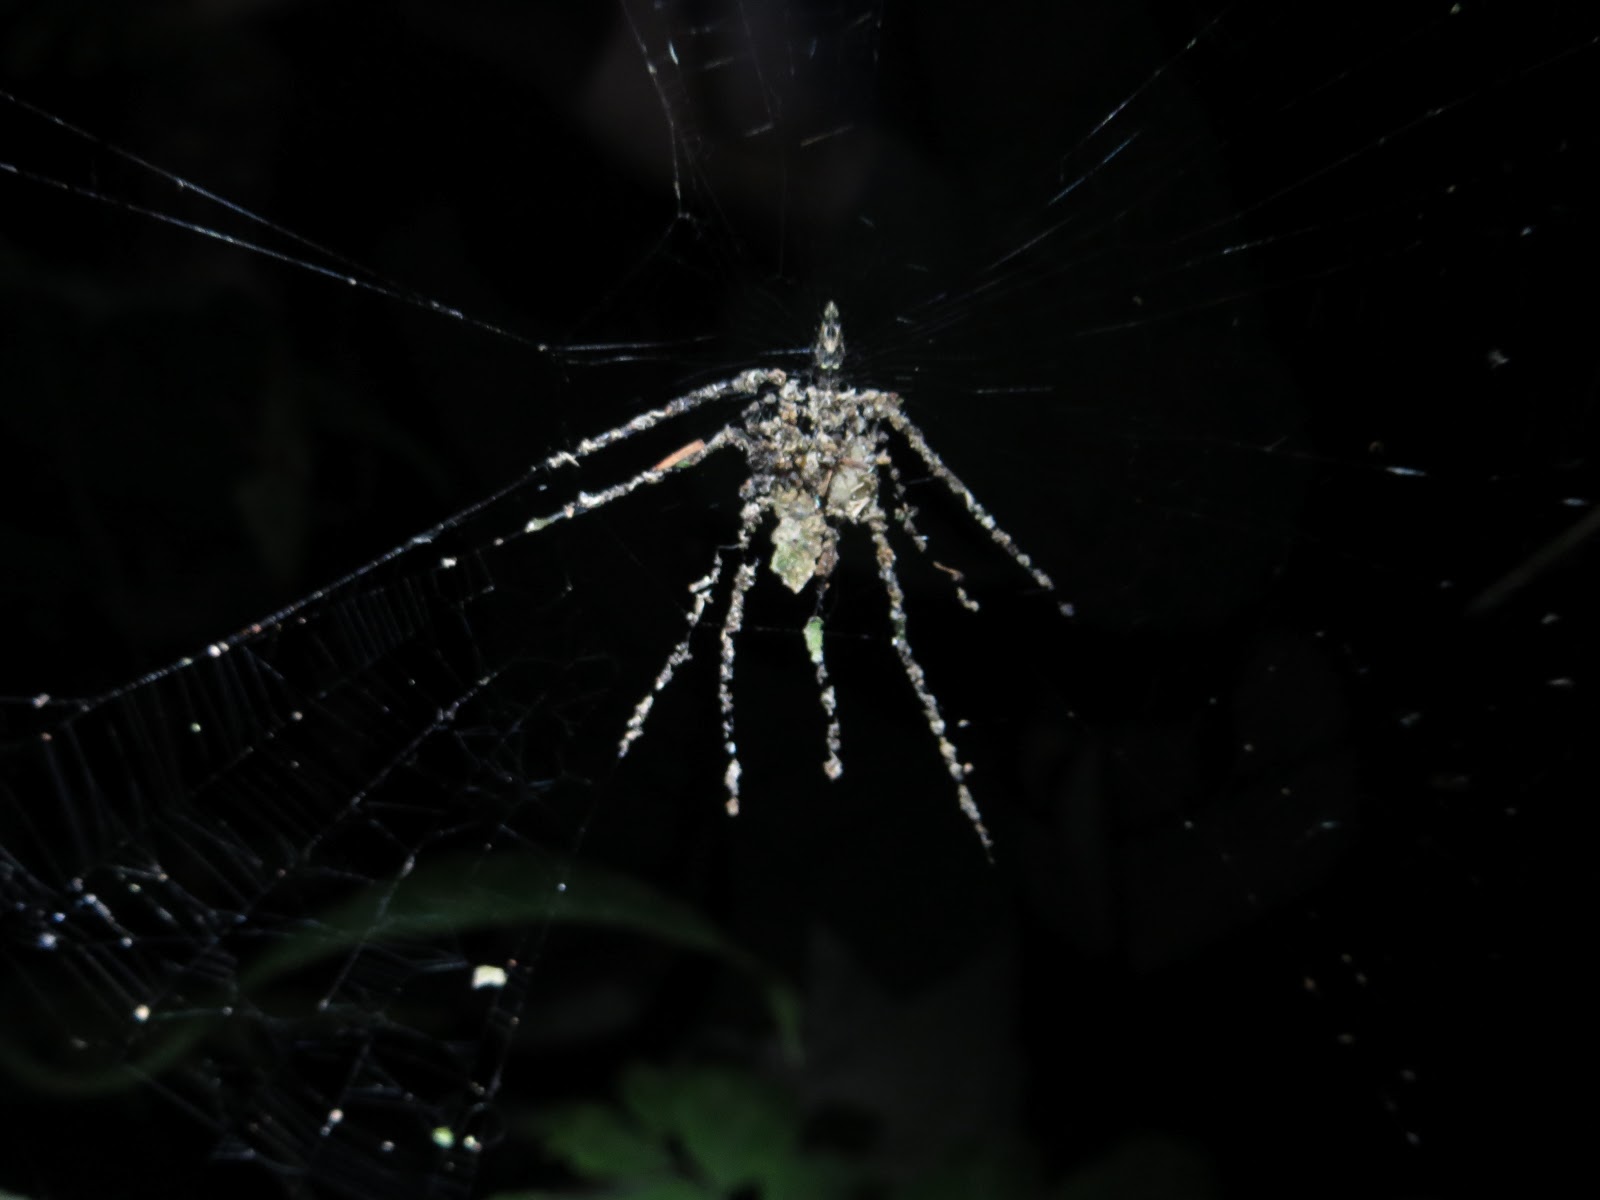 Regardez de plus près : cette araignée n'est faite que de débris végétaux et d'insectes morts ! Elle est 5 fois plus grande que la Cyclosa qui l'a construite. © Phil Torres